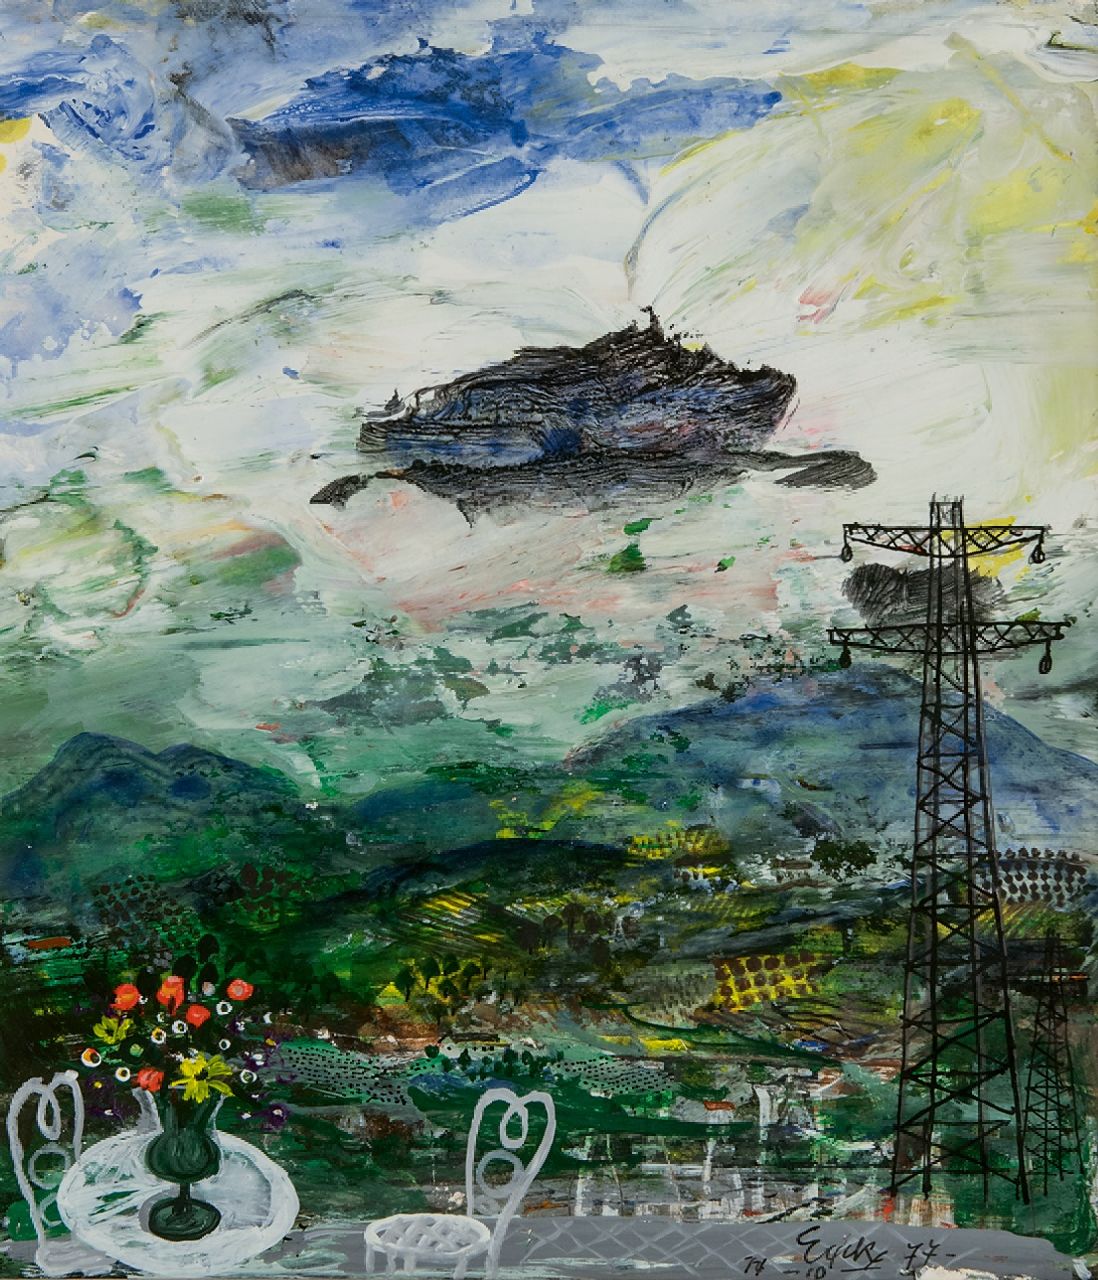 Charles Eyck | Uitzicht over een heuvellandschap, gouache op papier, 22,1 x 19,5 cm, gesigneerd r.o. en gedateerd 14-10 '77